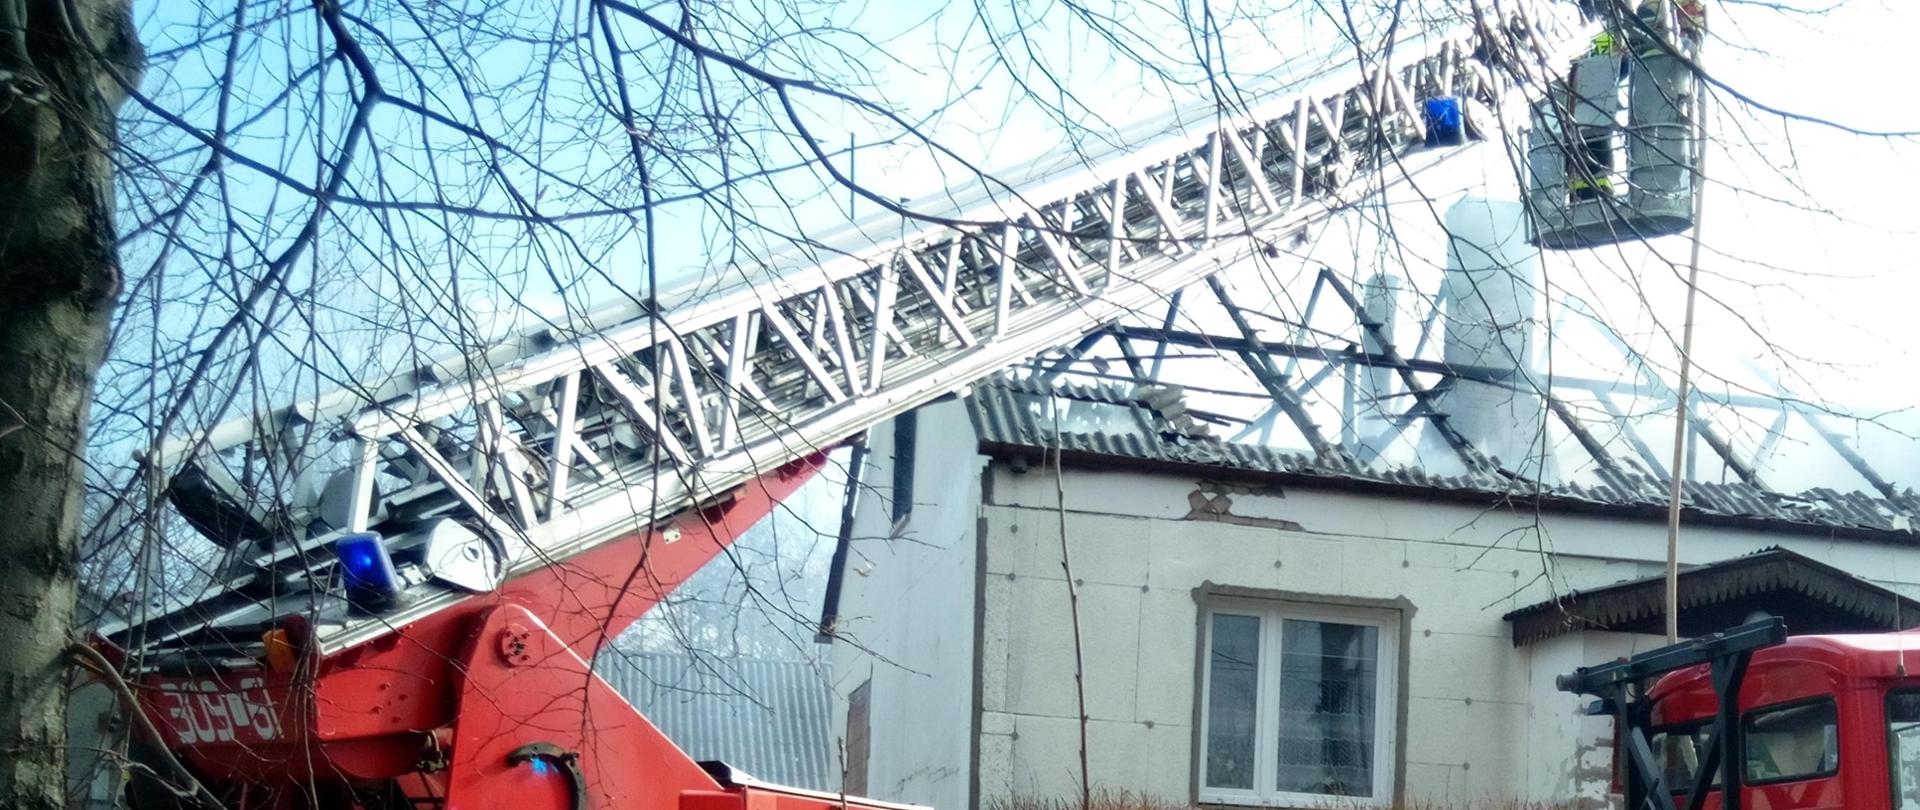 Na zdjęciu, na pierwszym planie widać samochód pożarniczy z drabiną mechaniczną. Za pojazdem znajduje się jednorodzinny dom, w którym wybuchł pożar.